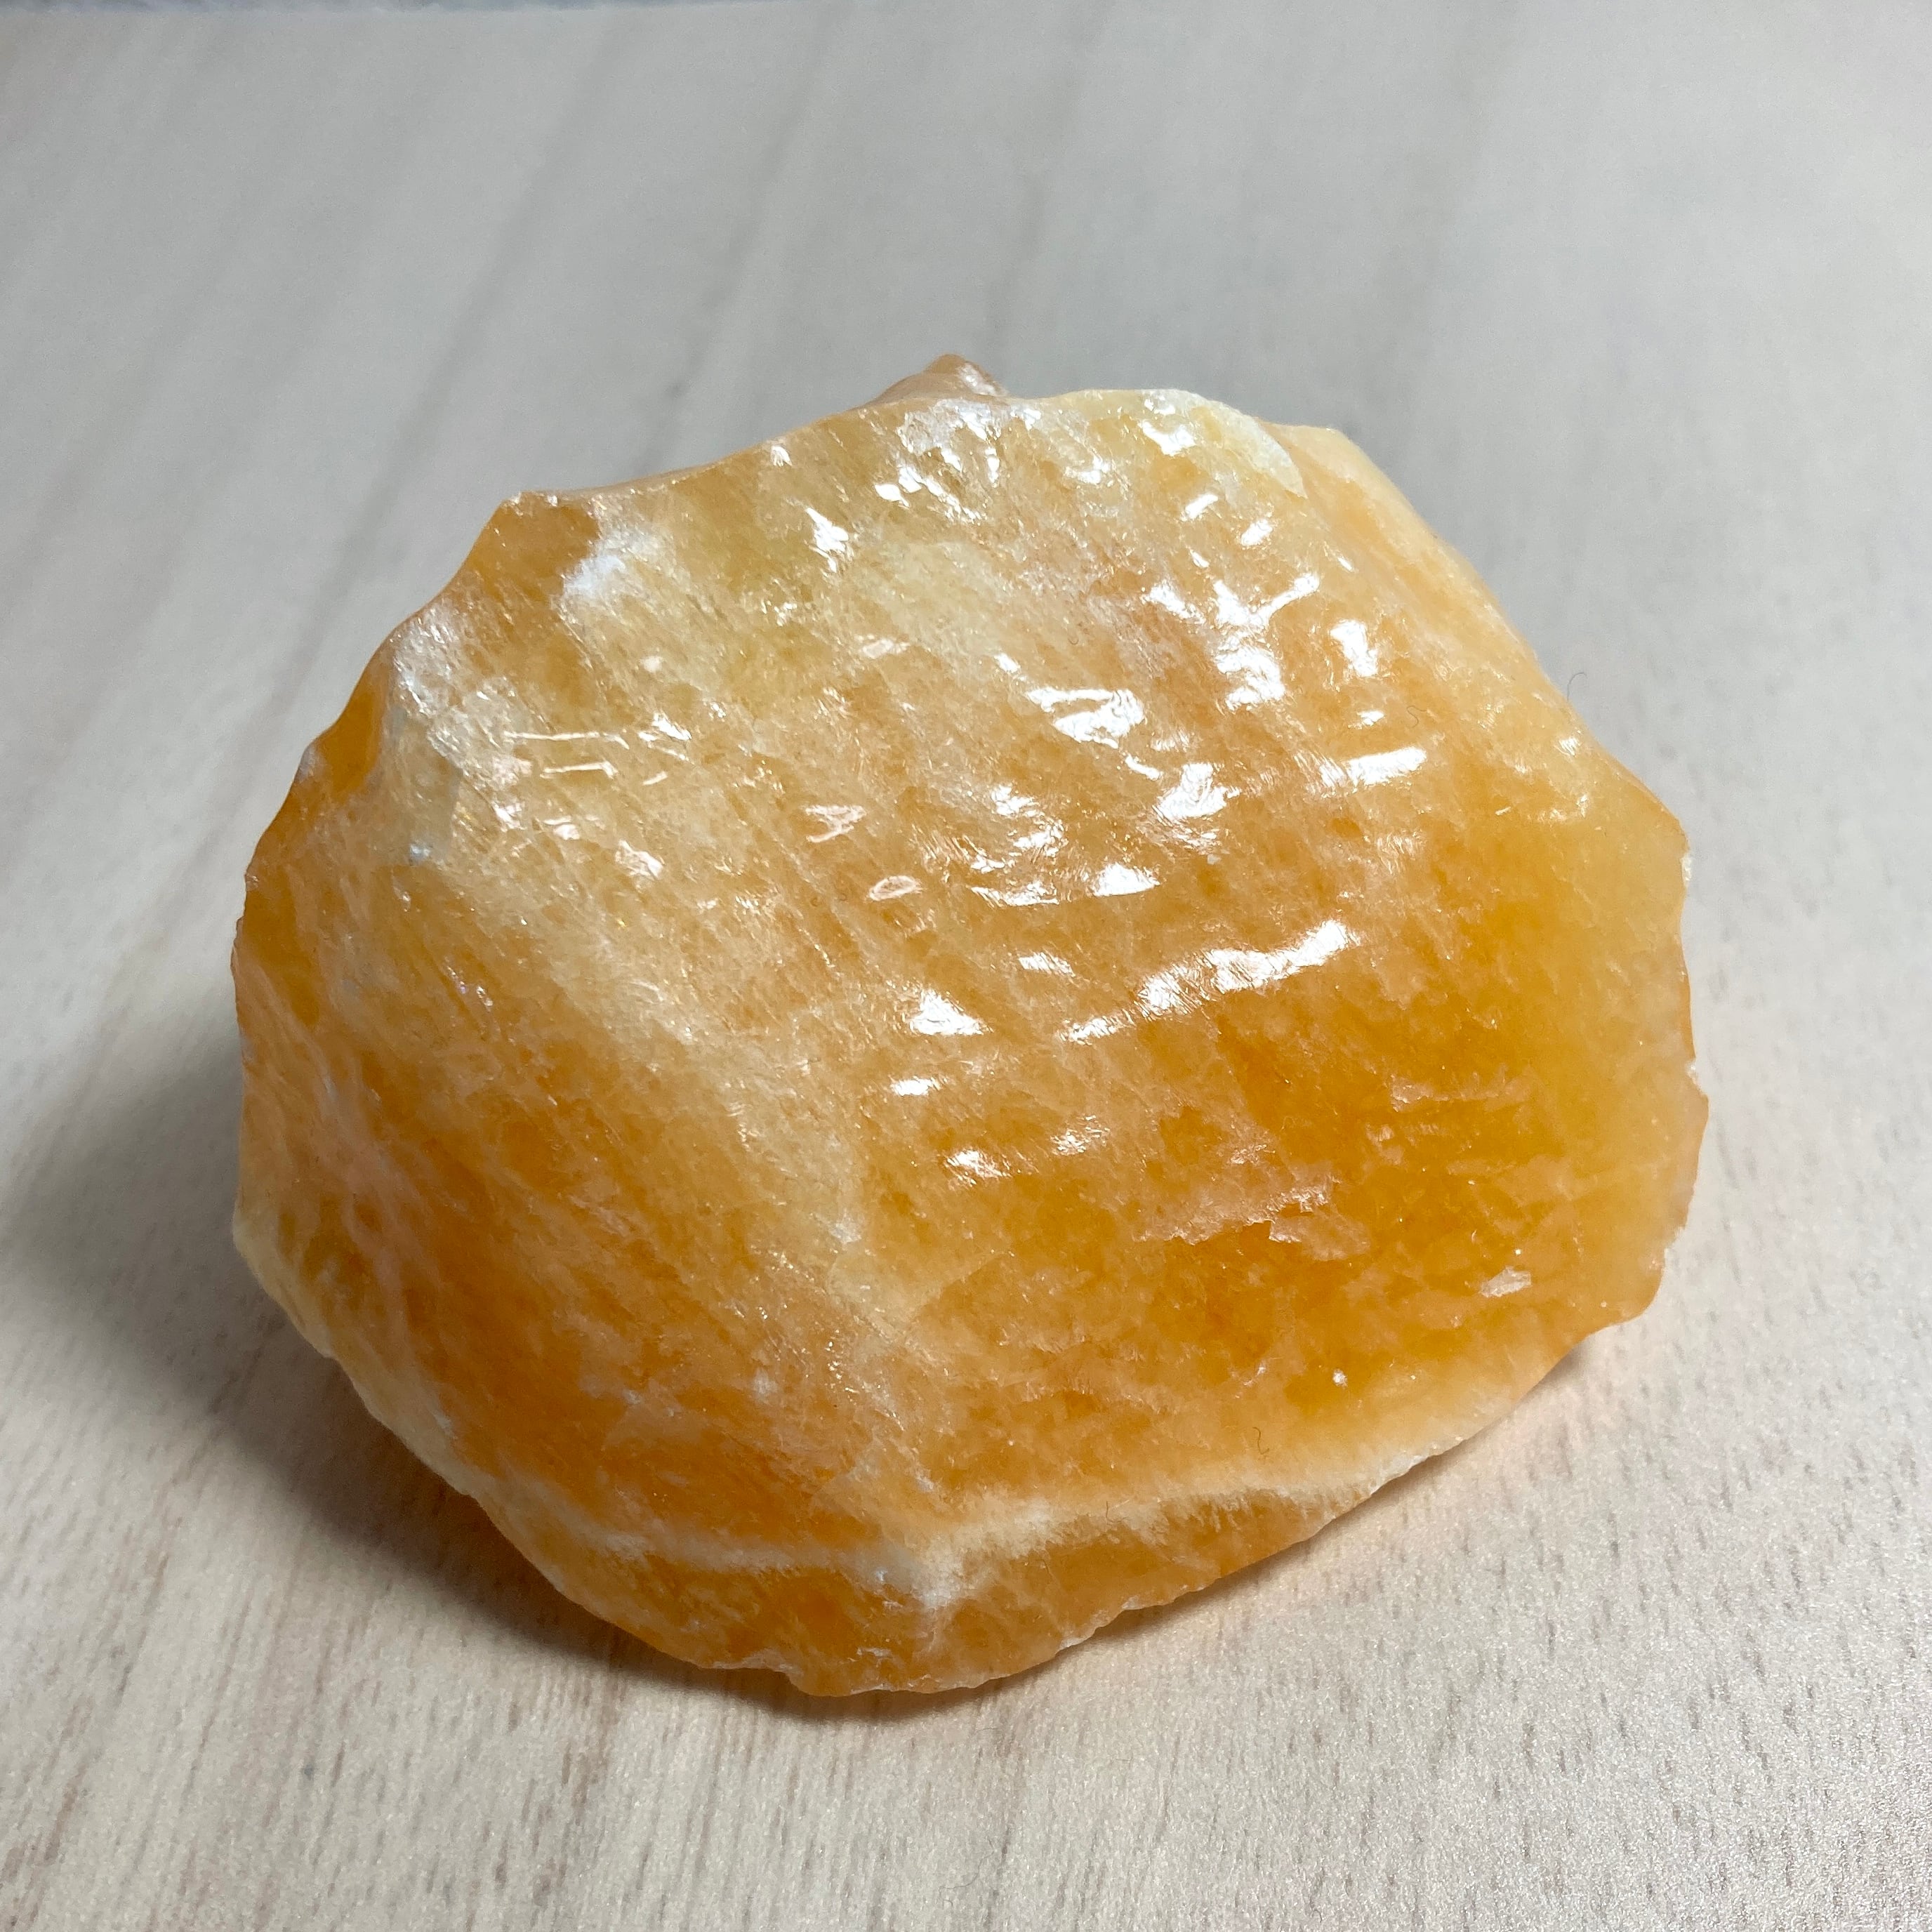 オレンジカルサイト 304g 天然石原石 ツルツル触感 | Hanamomo ...